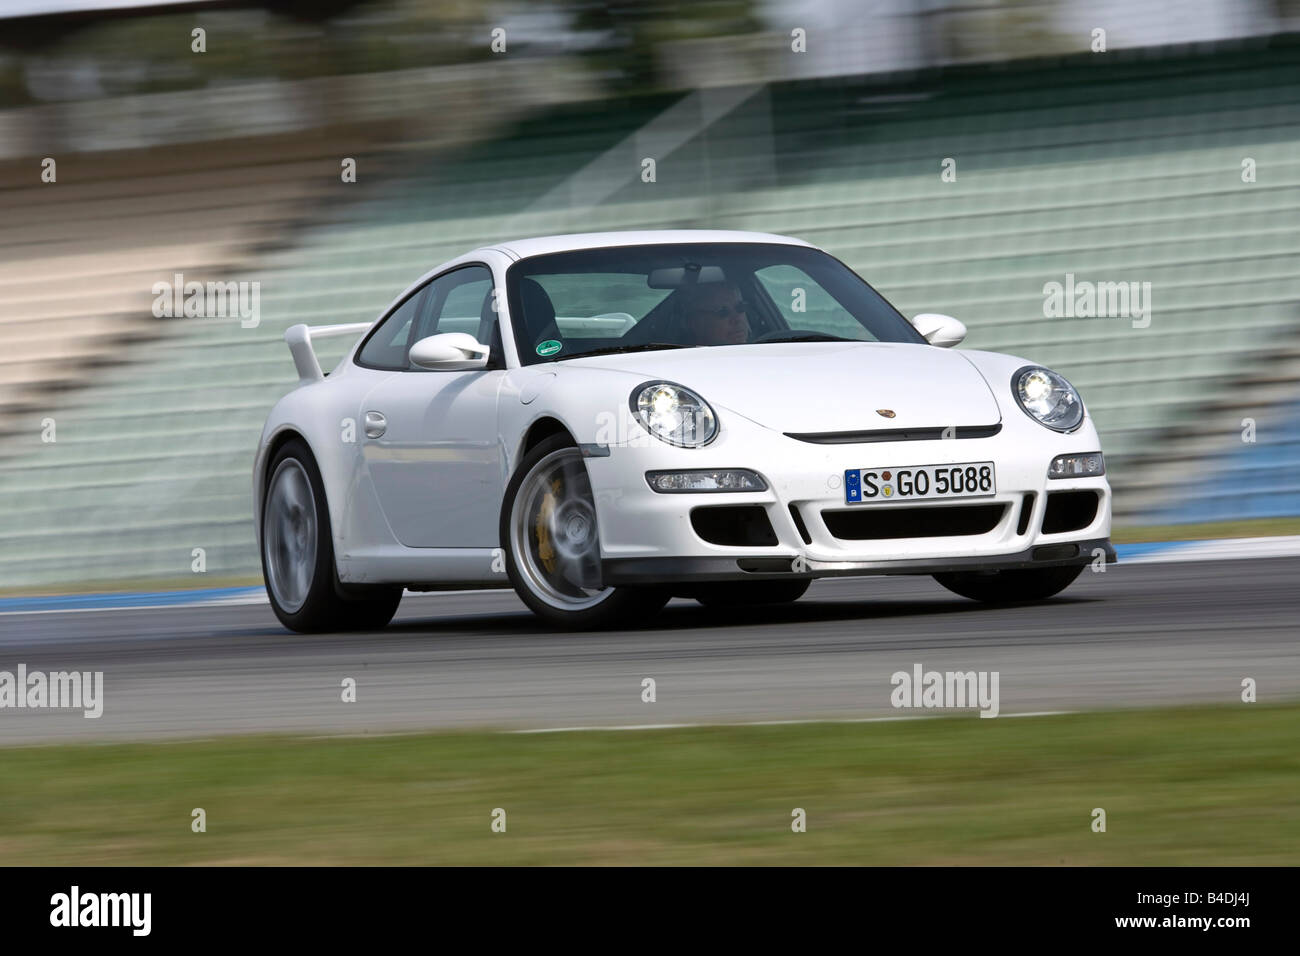 Porsche 911 GT3, l'année de modèle 2006-, blanc, la conduite, la diagonale de l'avant, vue frontale, test track Banque D'Images